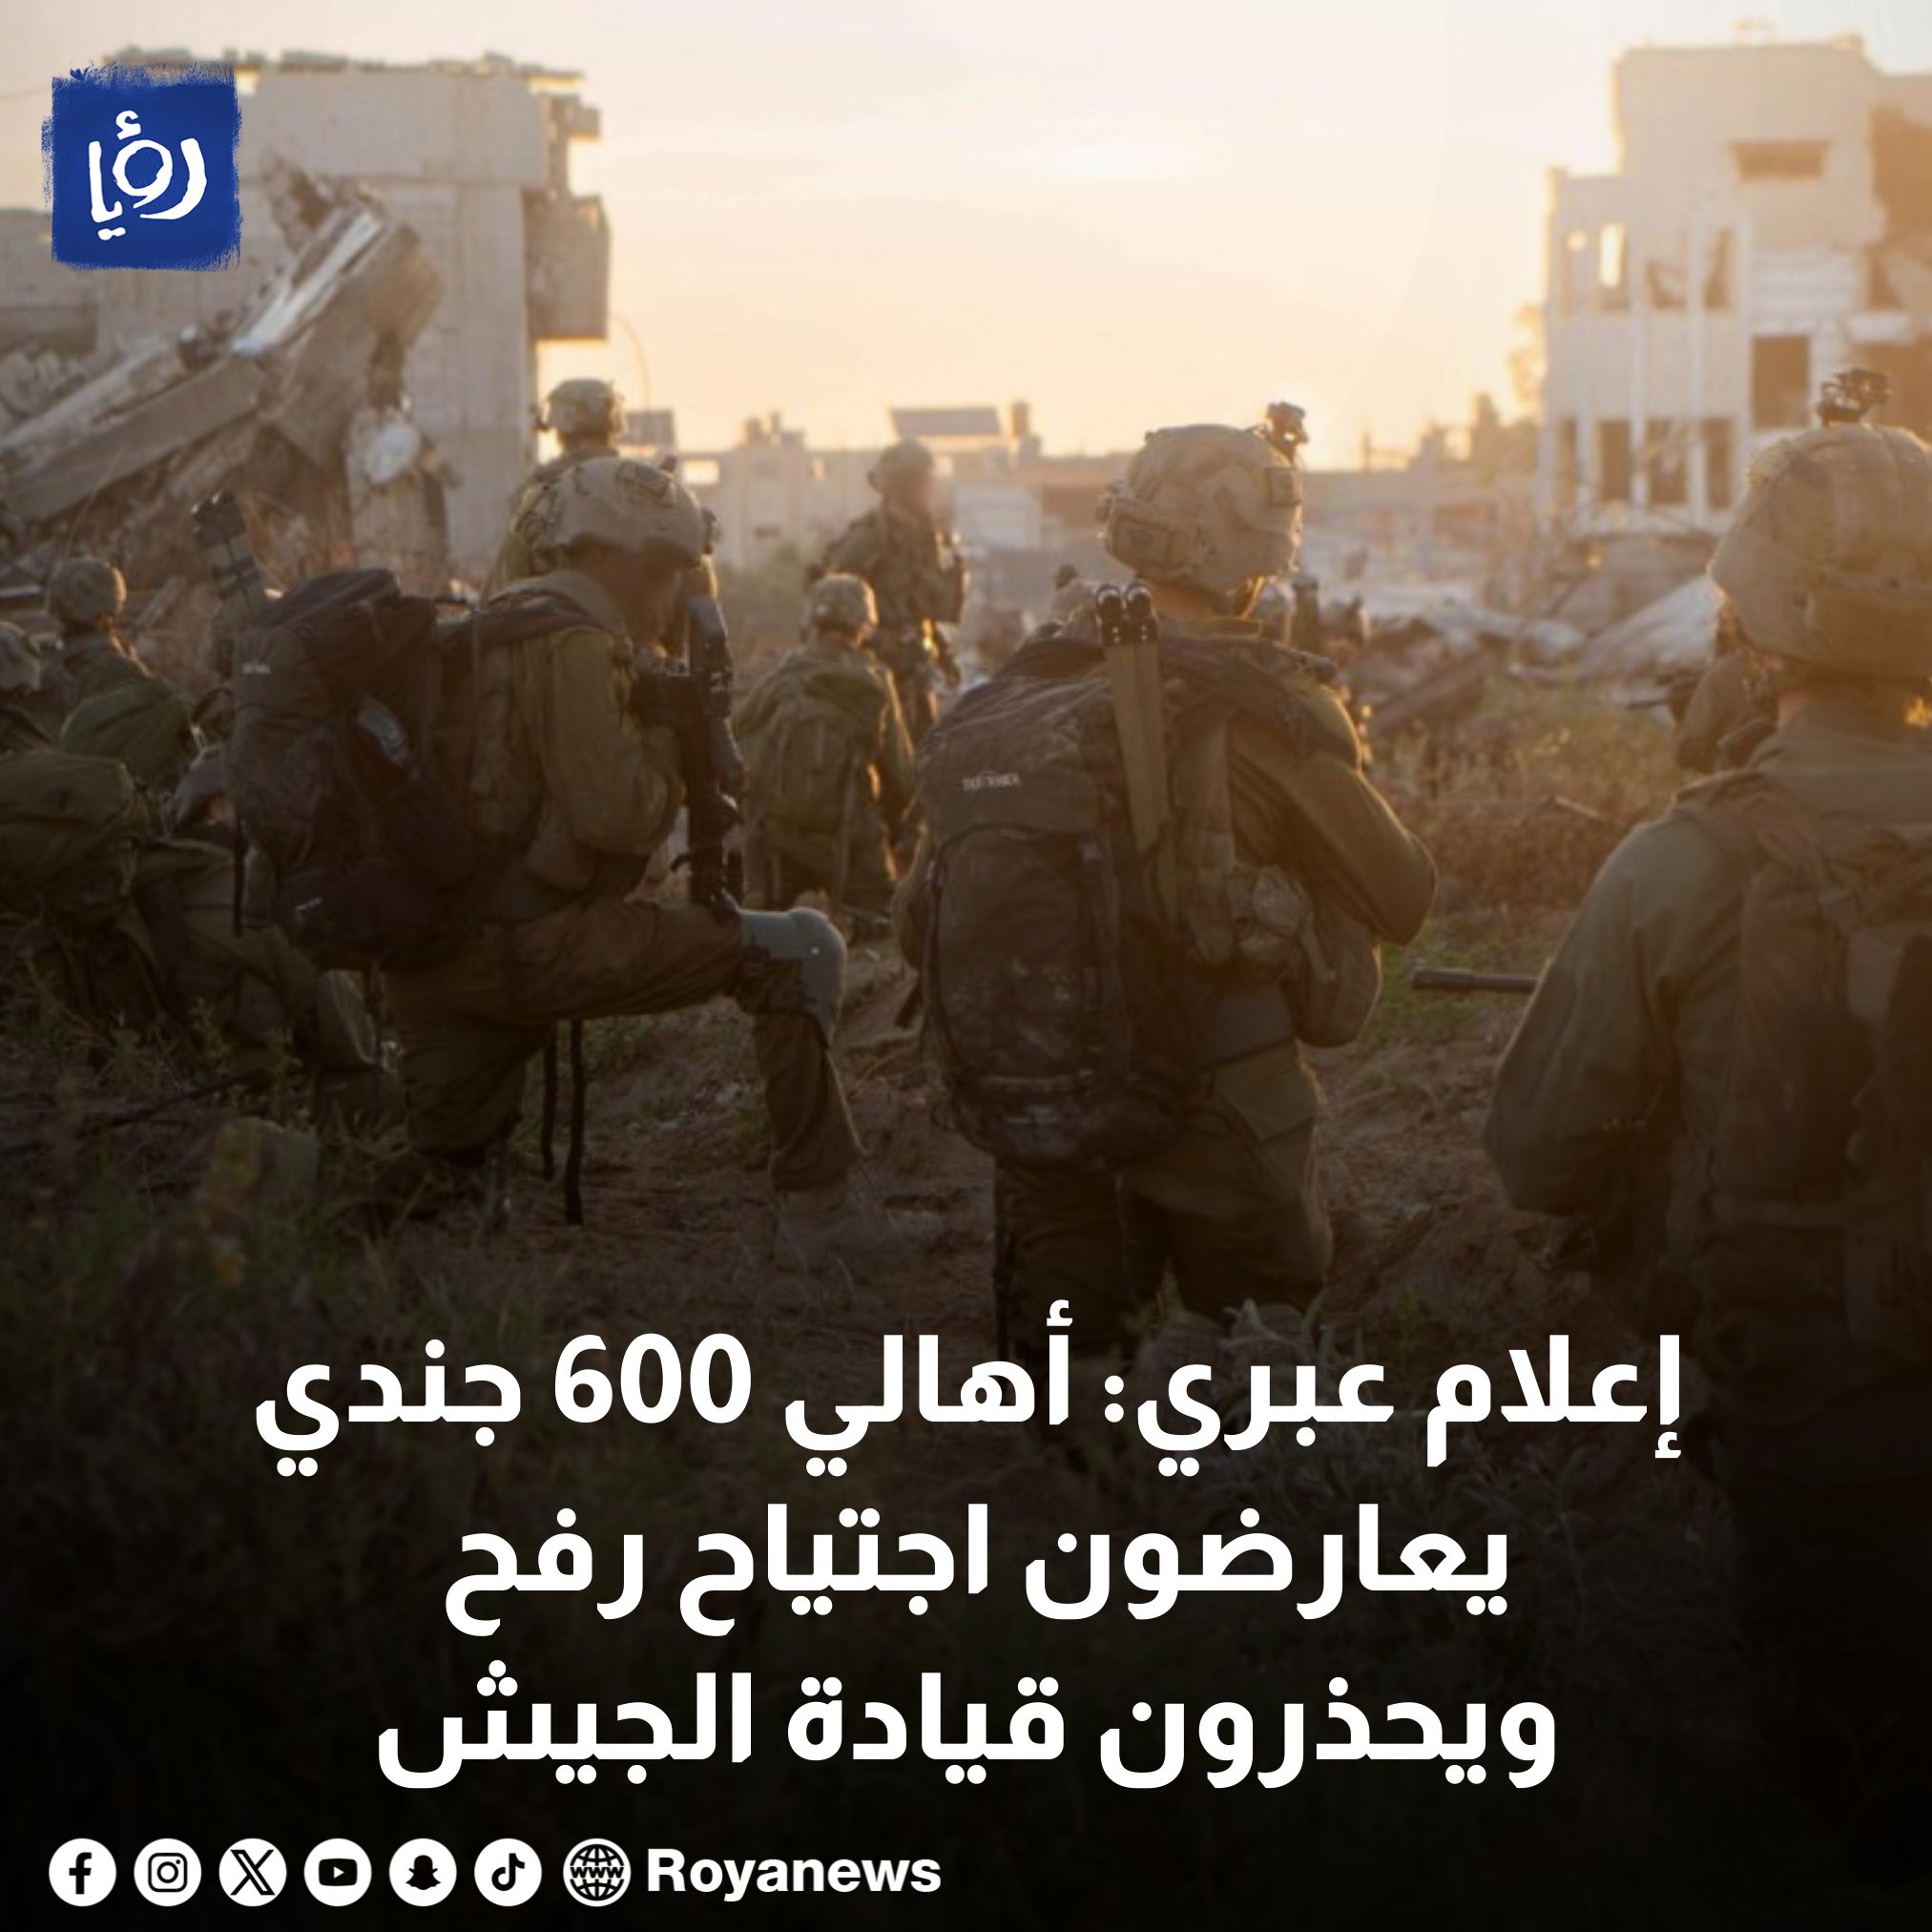 إعلام عبري: أهالي 600 جندي يعارضون اجتياح رفح ويحذرون قيادة الجيش #عاجل 